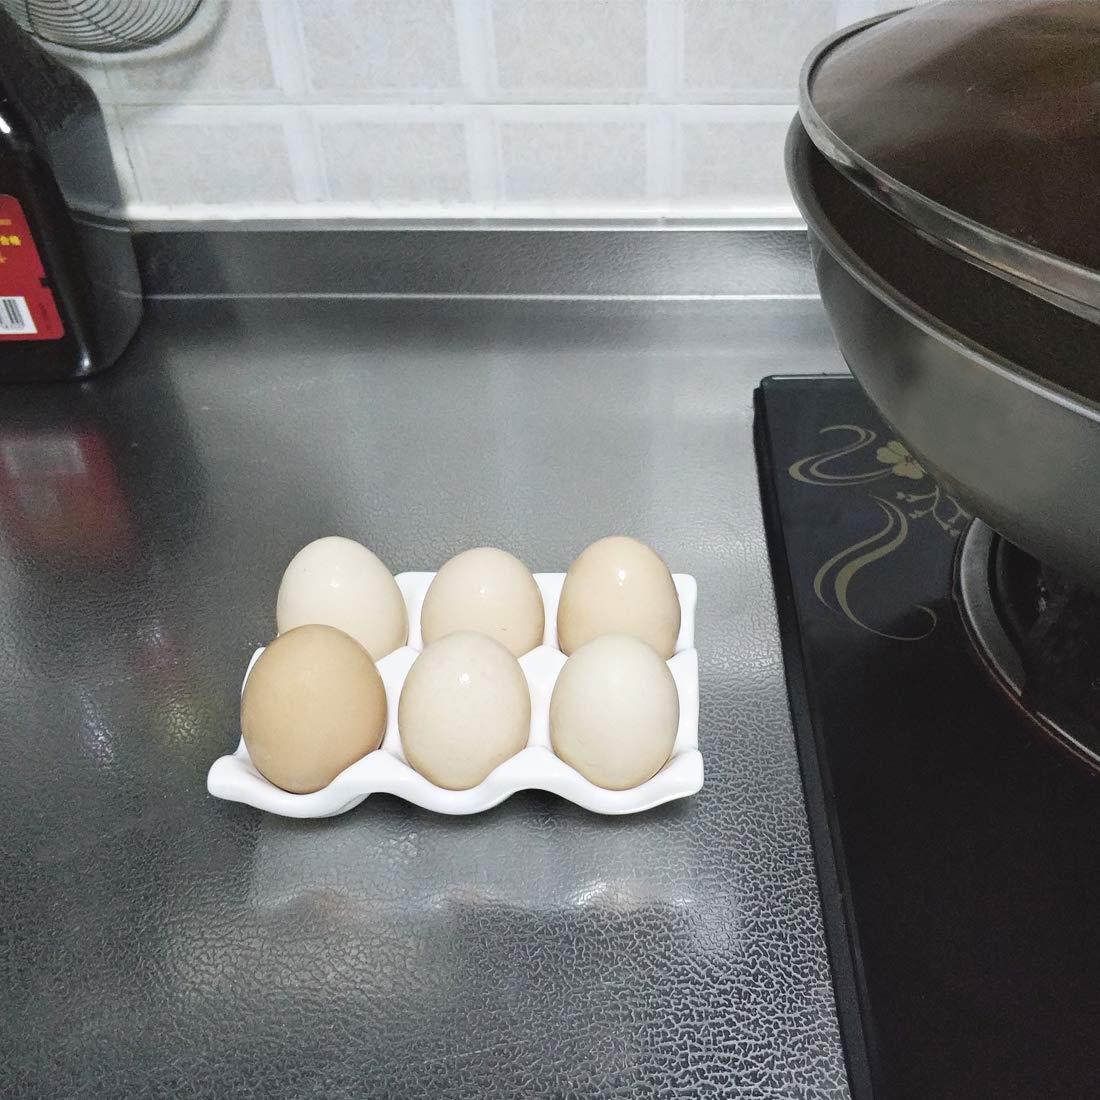 Bealuffe Ceramic Egg Holder Egg Tray Porcelain Fresh Egg Holder for Fridge Countertop Kitchen Storage Half Dozen 6 Cups (White)